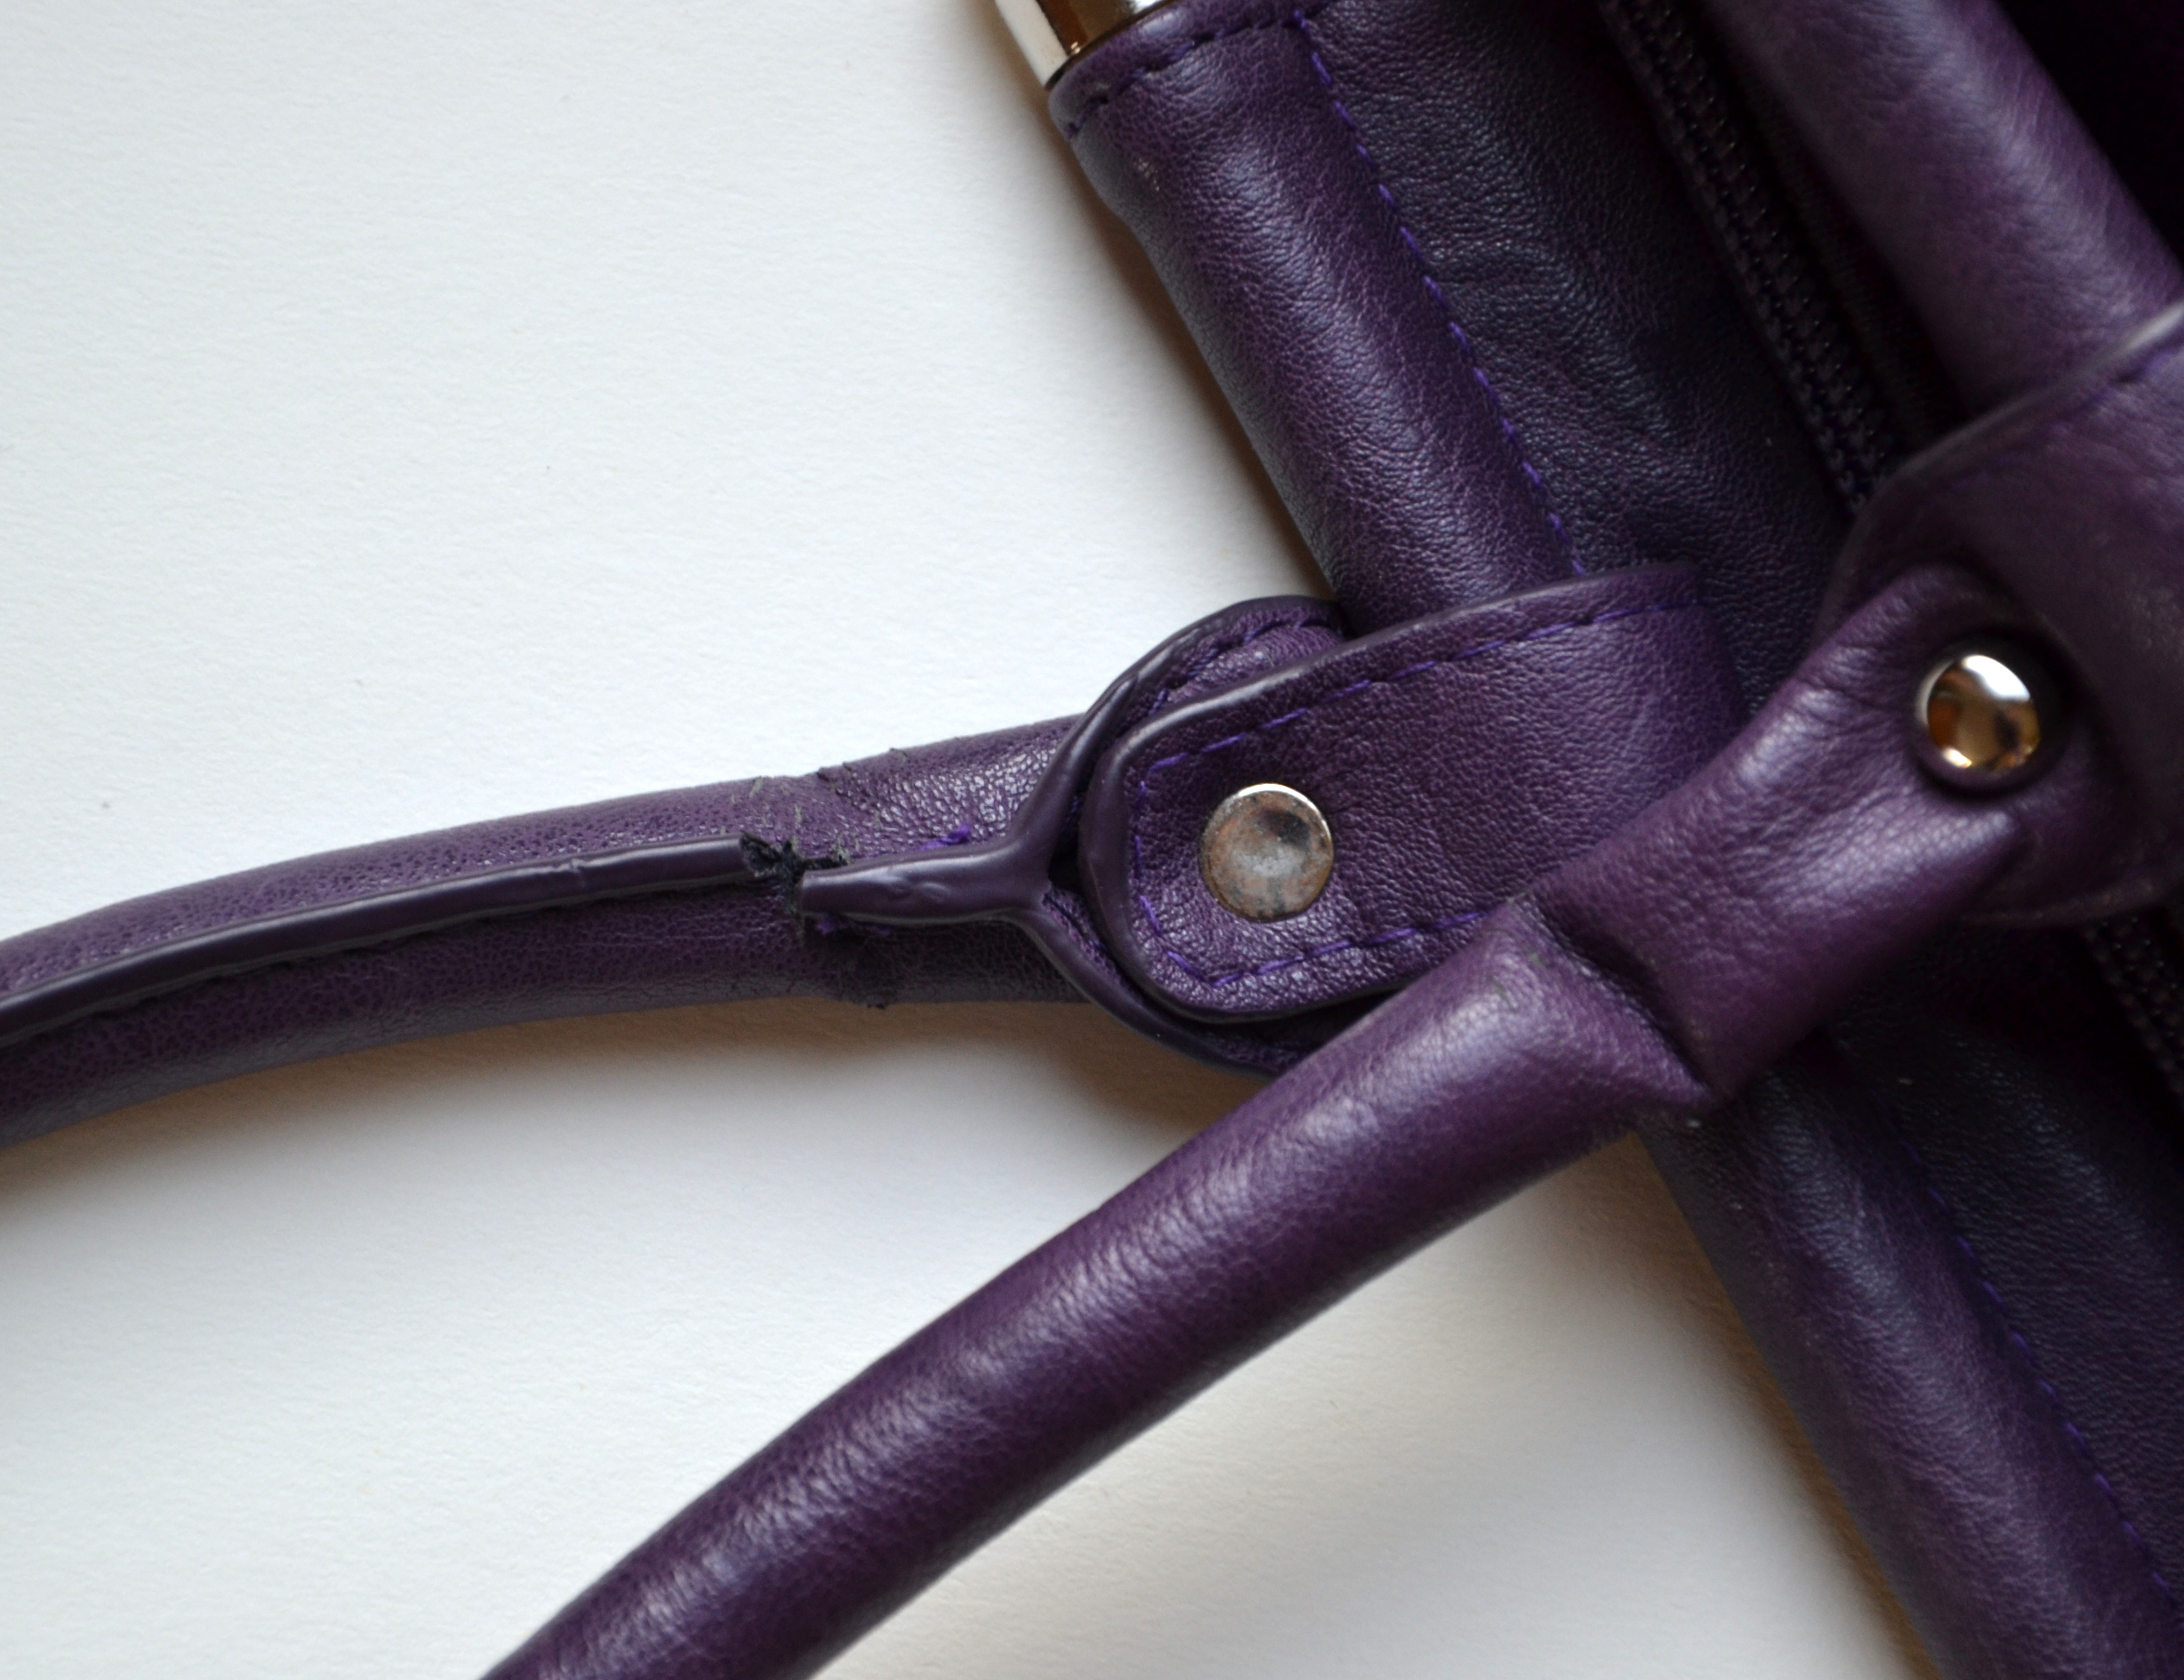 Ideas: How to fix broken handles of a purse